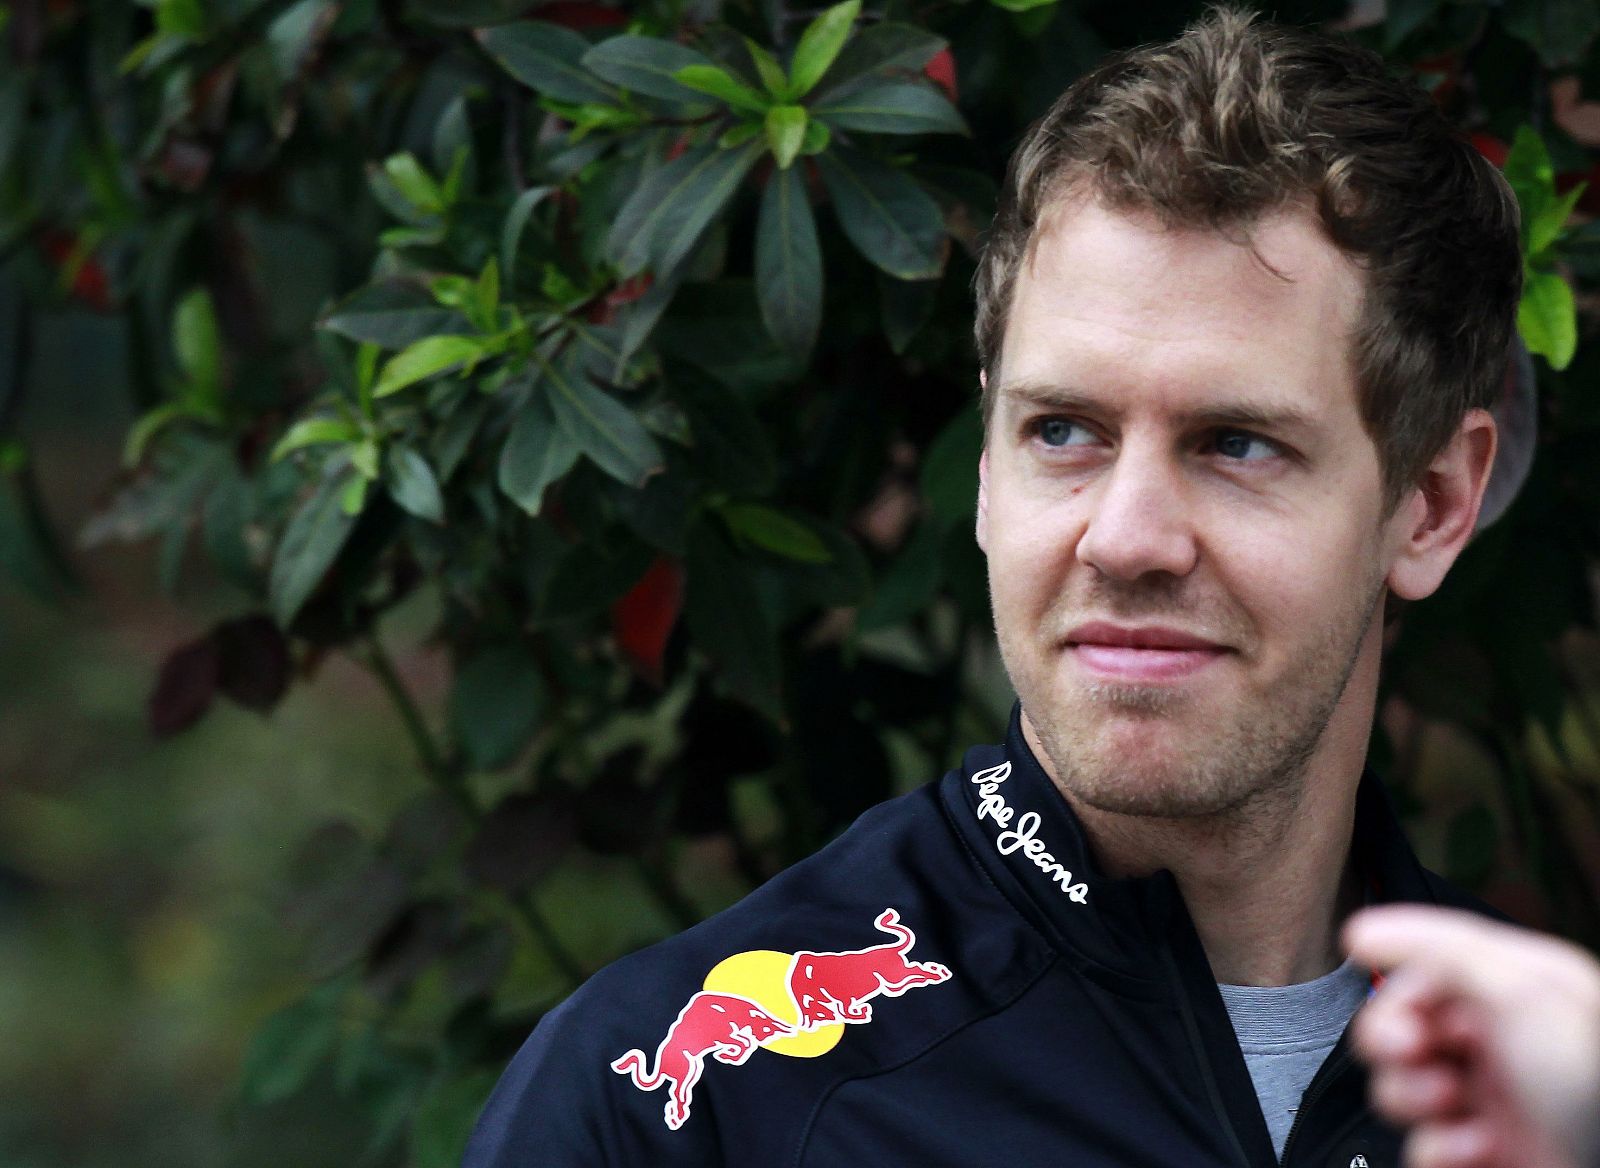 El piloto alemán de Fórmula 1 de la escudería Red Bull, Sebastian Vettel